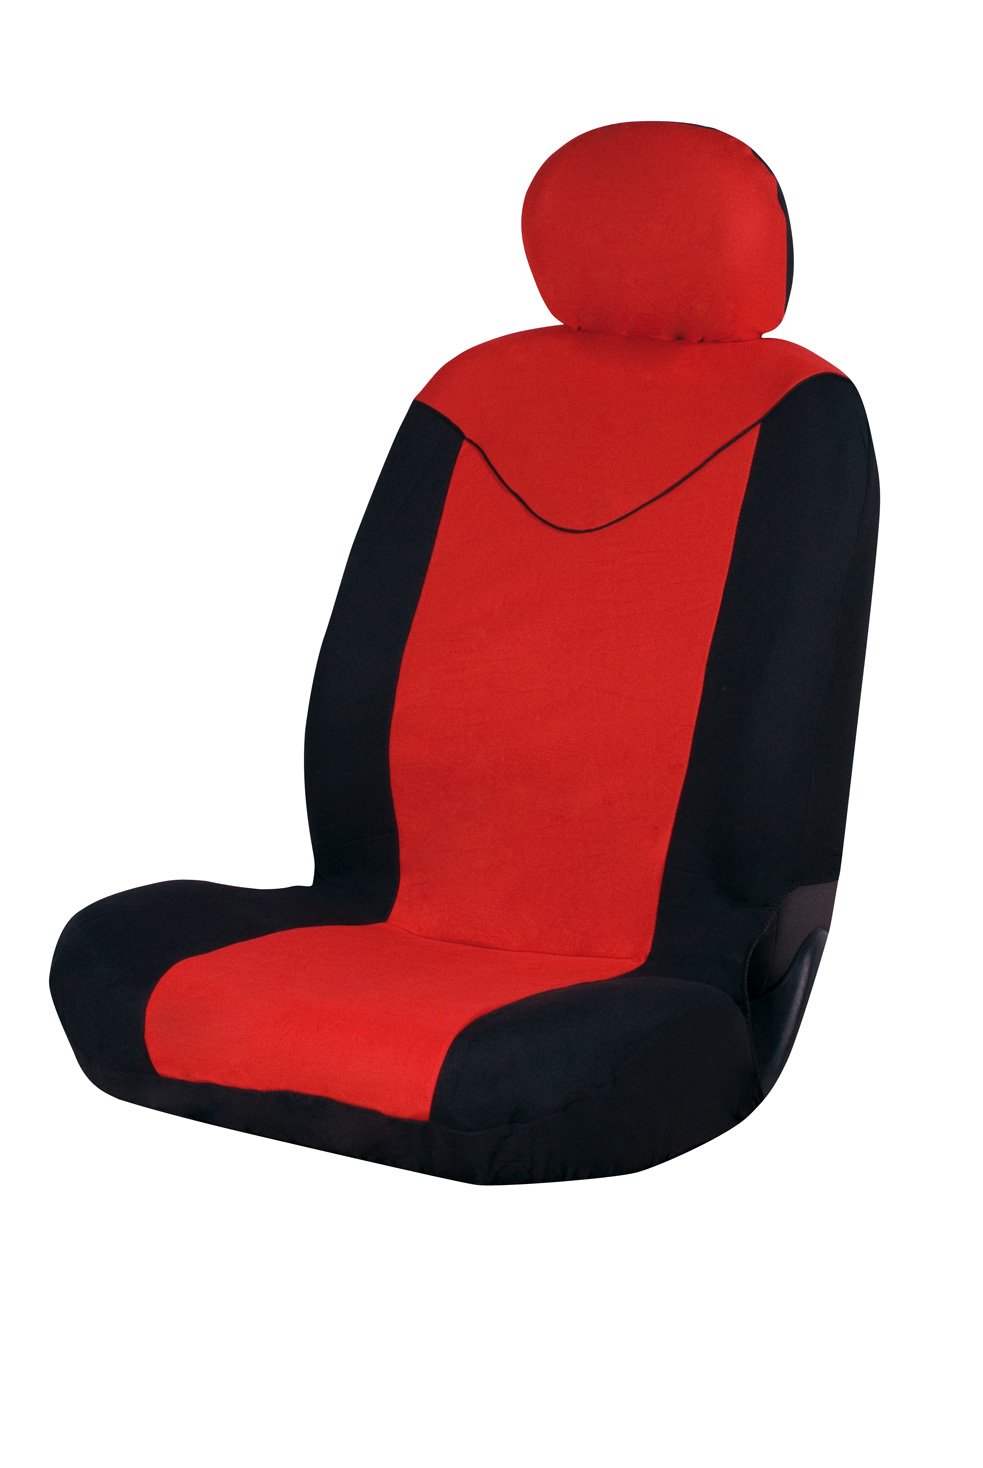 Sumex FUND95R Unicorn Universal-Sitzbezug, für Vordersitz, 1 Stück, Schwarz/Rot von Sumex